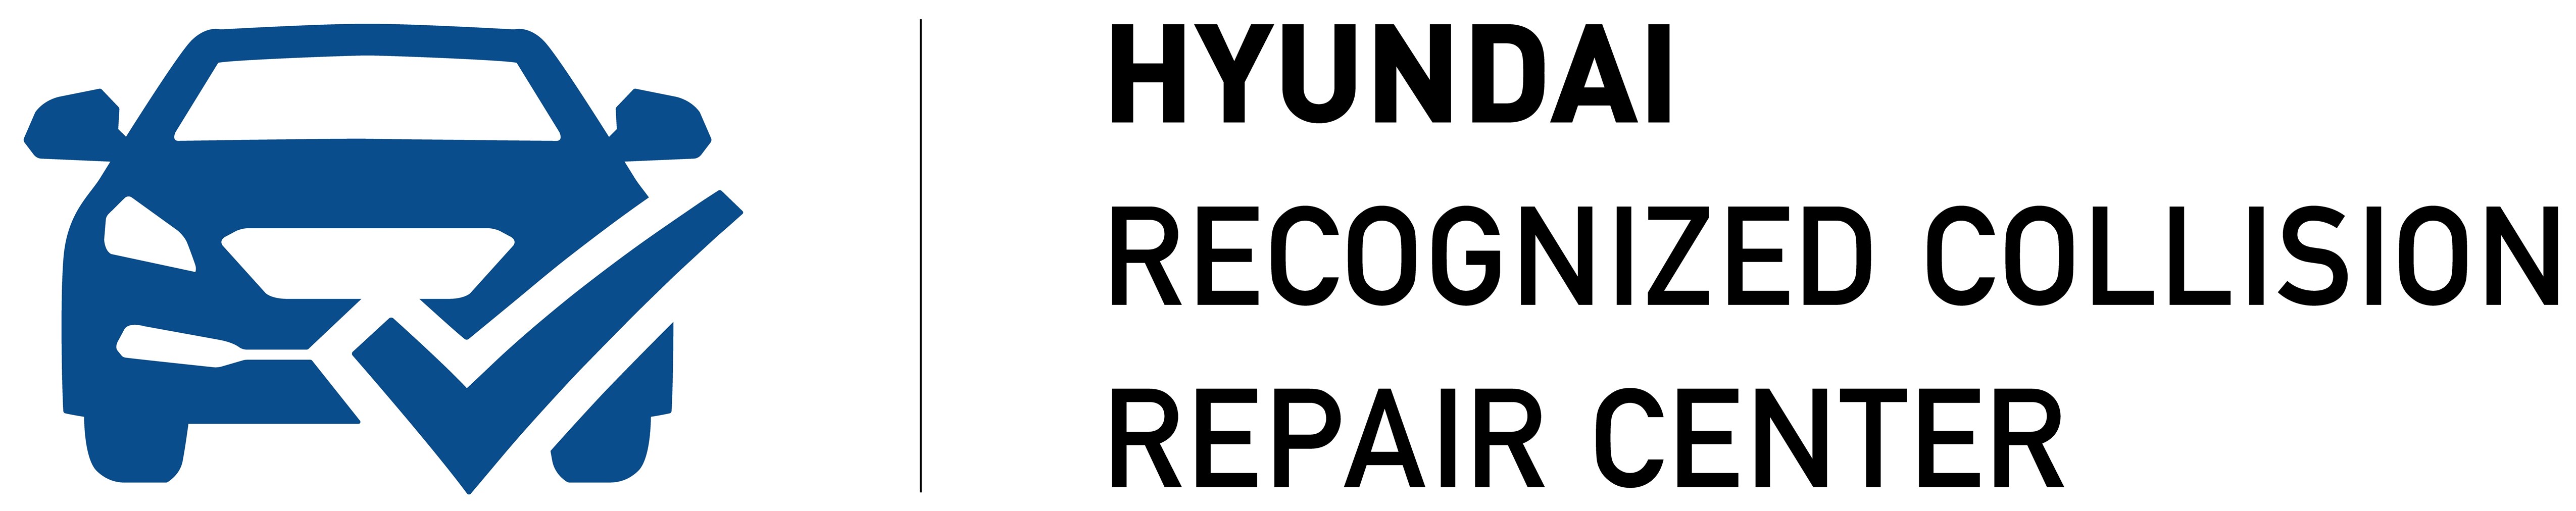 HYUNDAI LAUNCHES RECOGNIZED COLLISION REPAIR CENTER PROGRAM